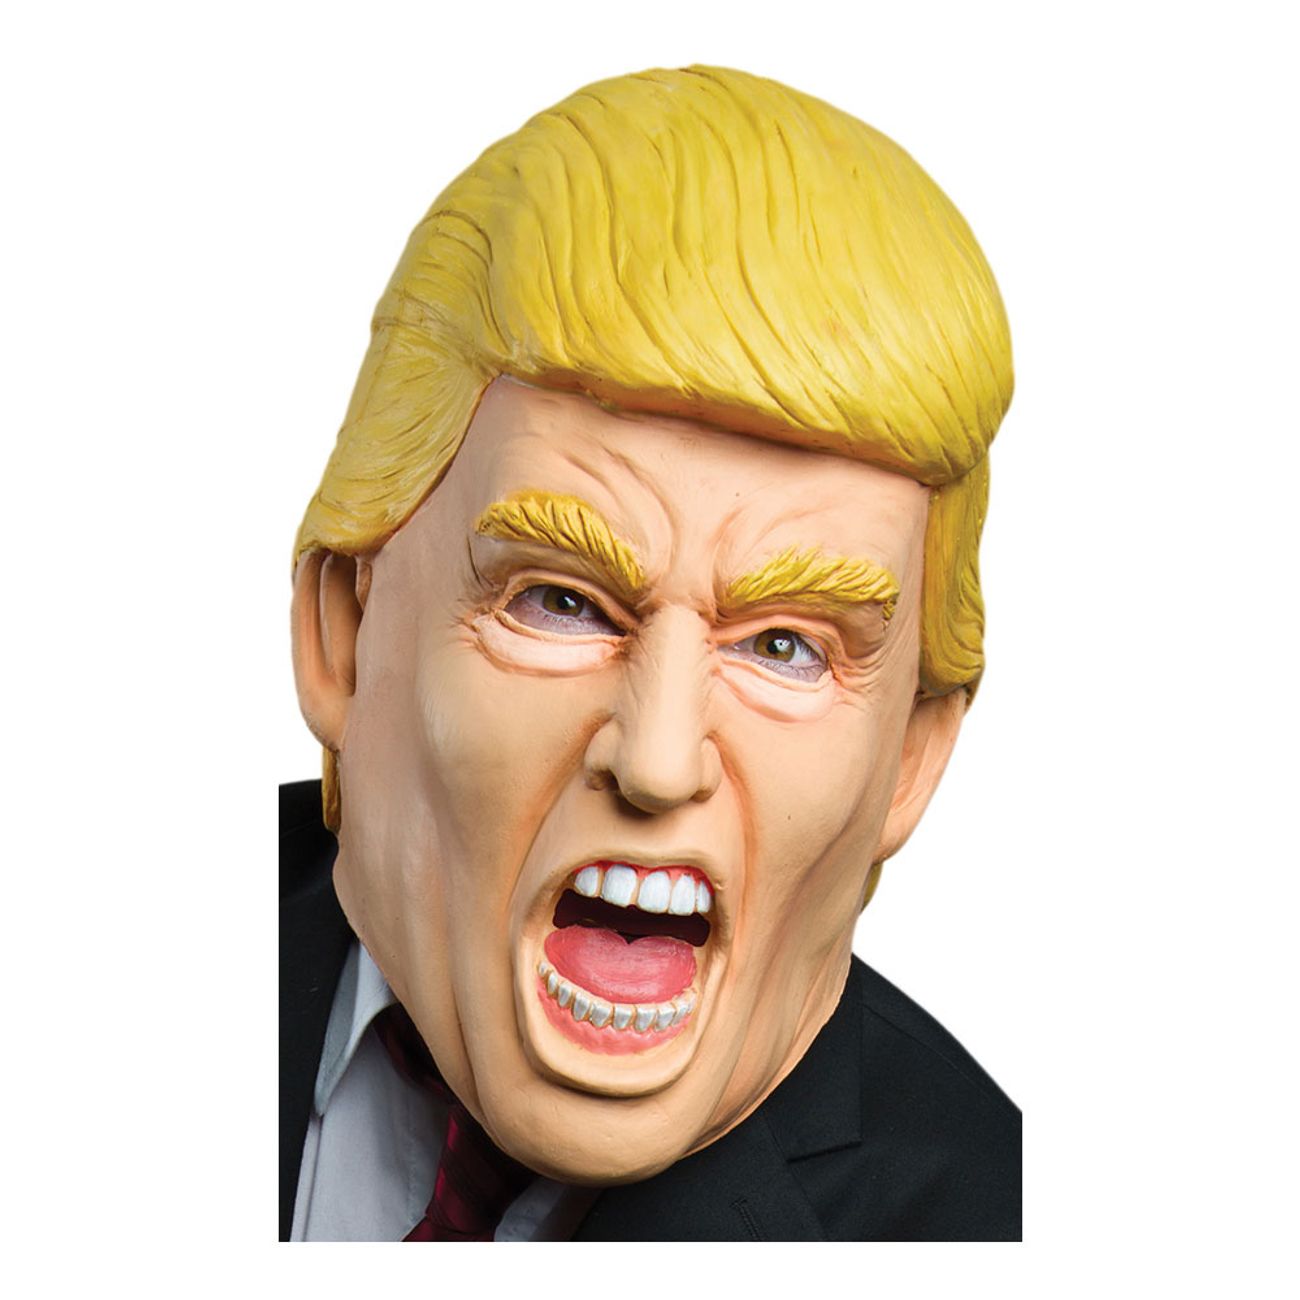 amerikansk-president-stor-mask-1